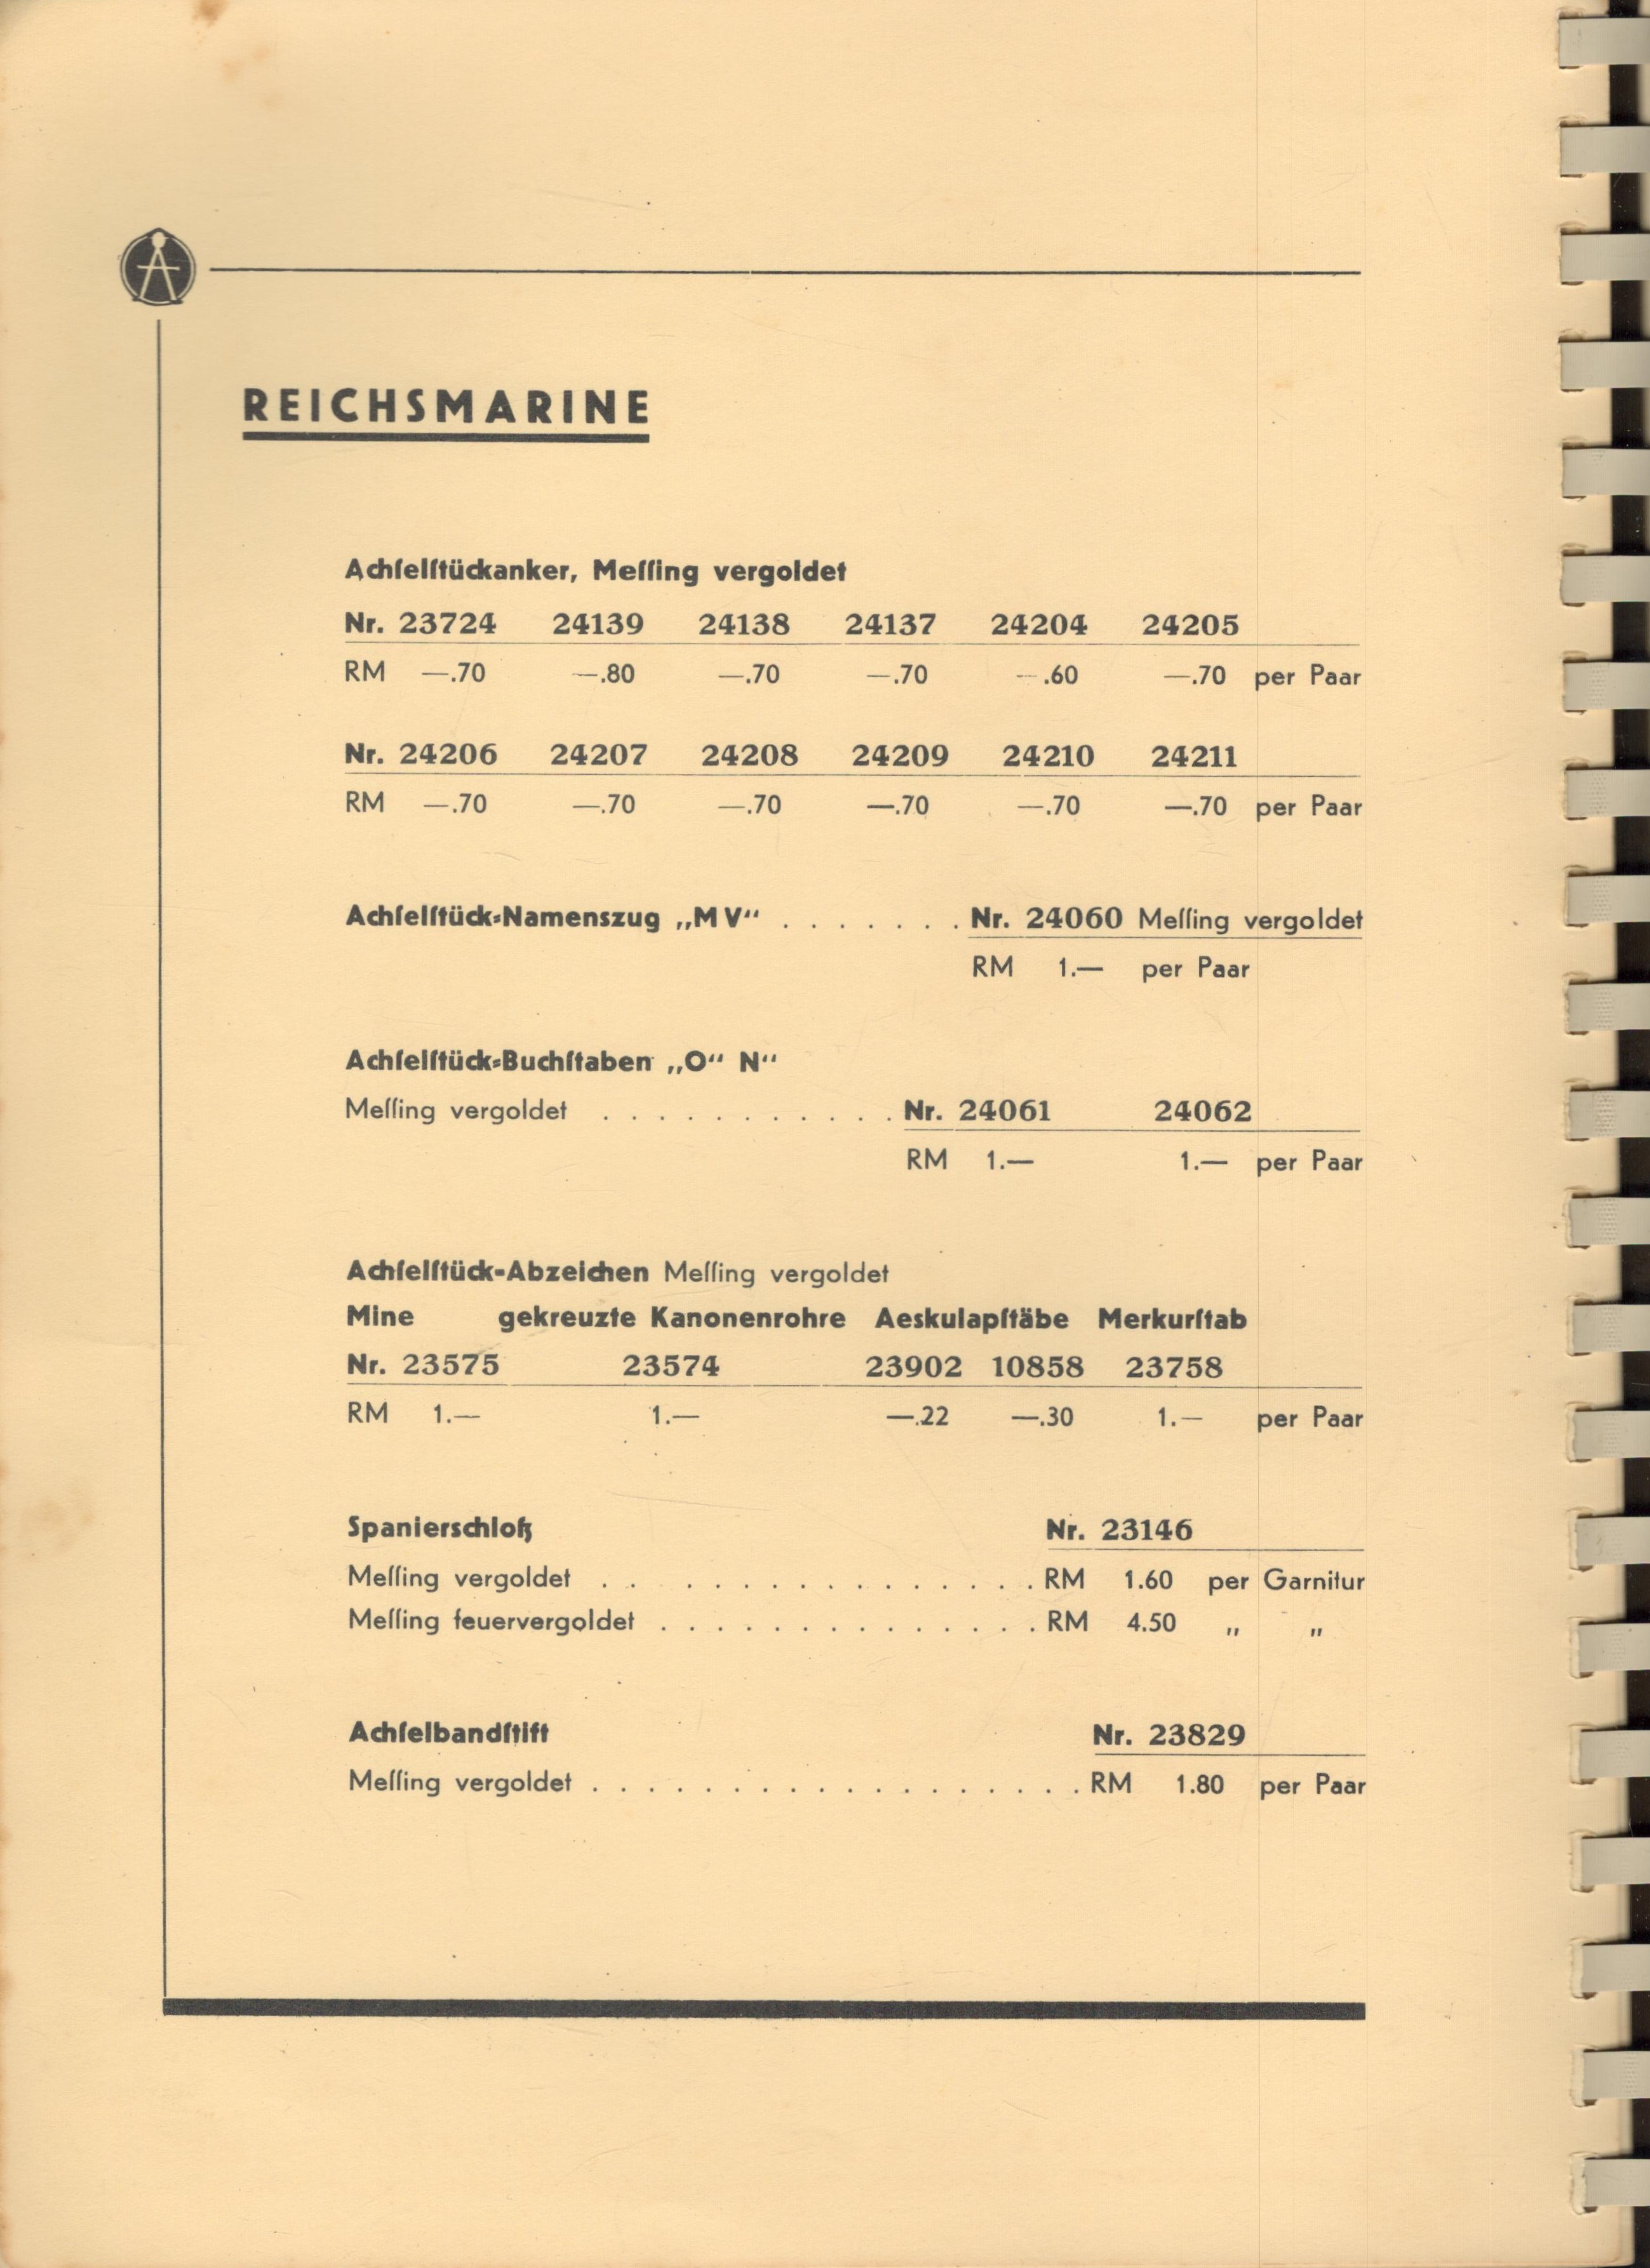 F.W. Assmann & Söhne Lüdenscheid Luftwaffe original catalogue and price list. 12x9 inch in size. - Image 12 of 12